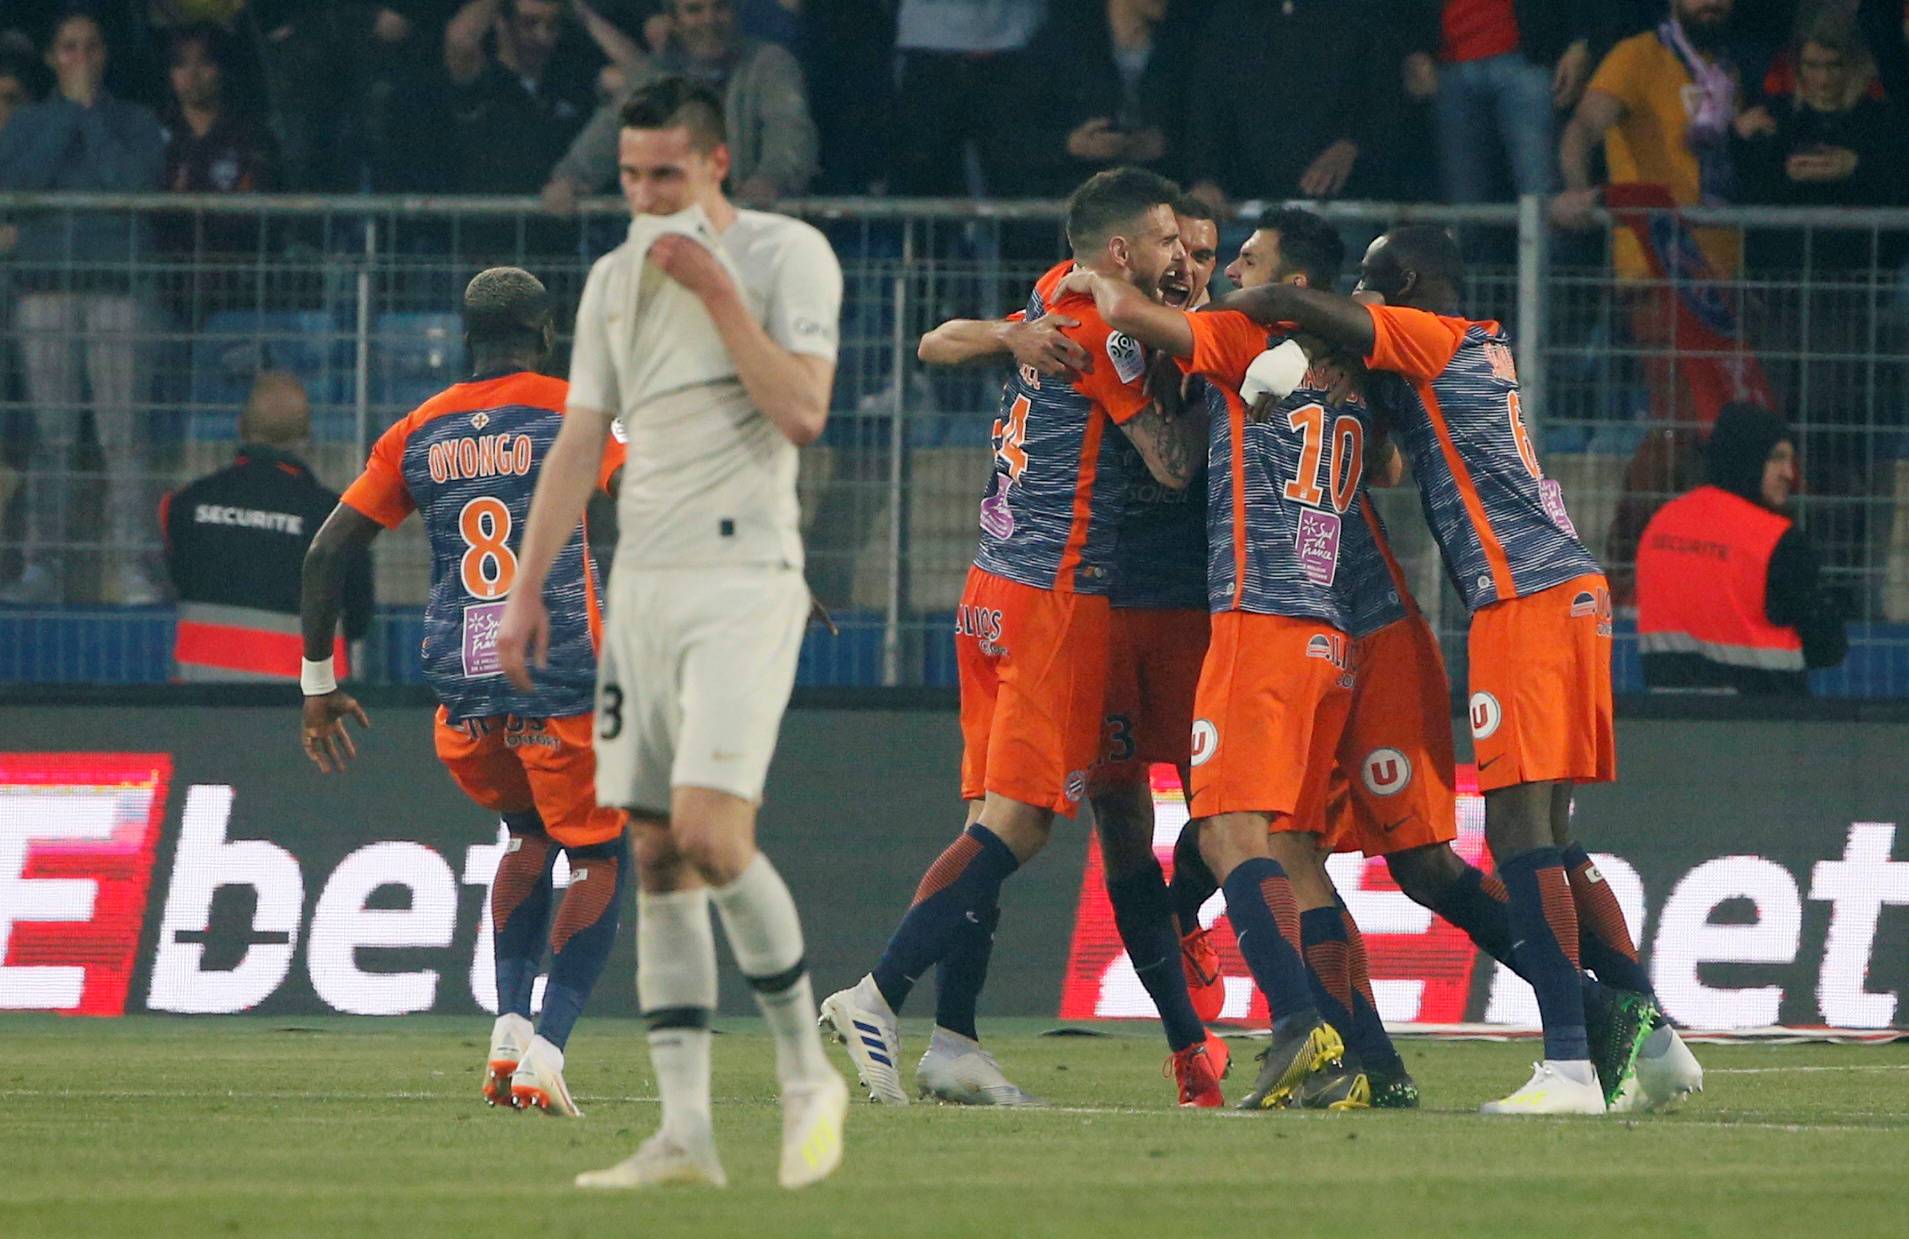 Ligue 1 - Montpellier v Paris St Germain